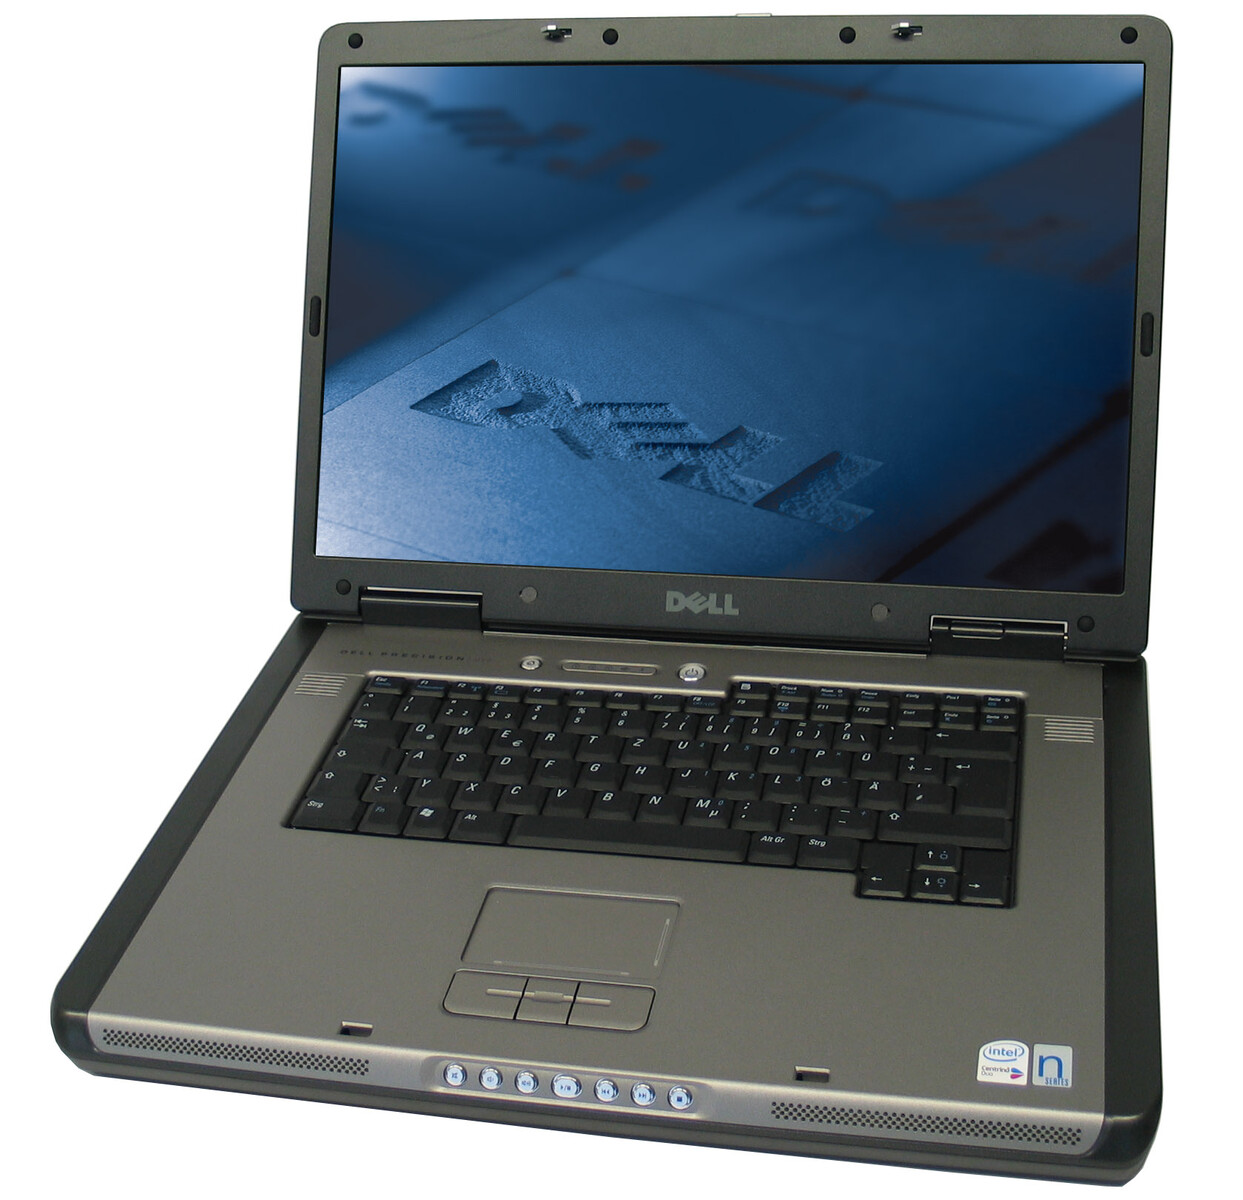 Laptop Dell Precision M6300 Mobile Workstation, Intel Core 2 Duo T7700 2.40GHz, 2GB DDR2, 320GB SATA, NVIDIA Quadro FX 1600M, DVD-RW, 17 Inch